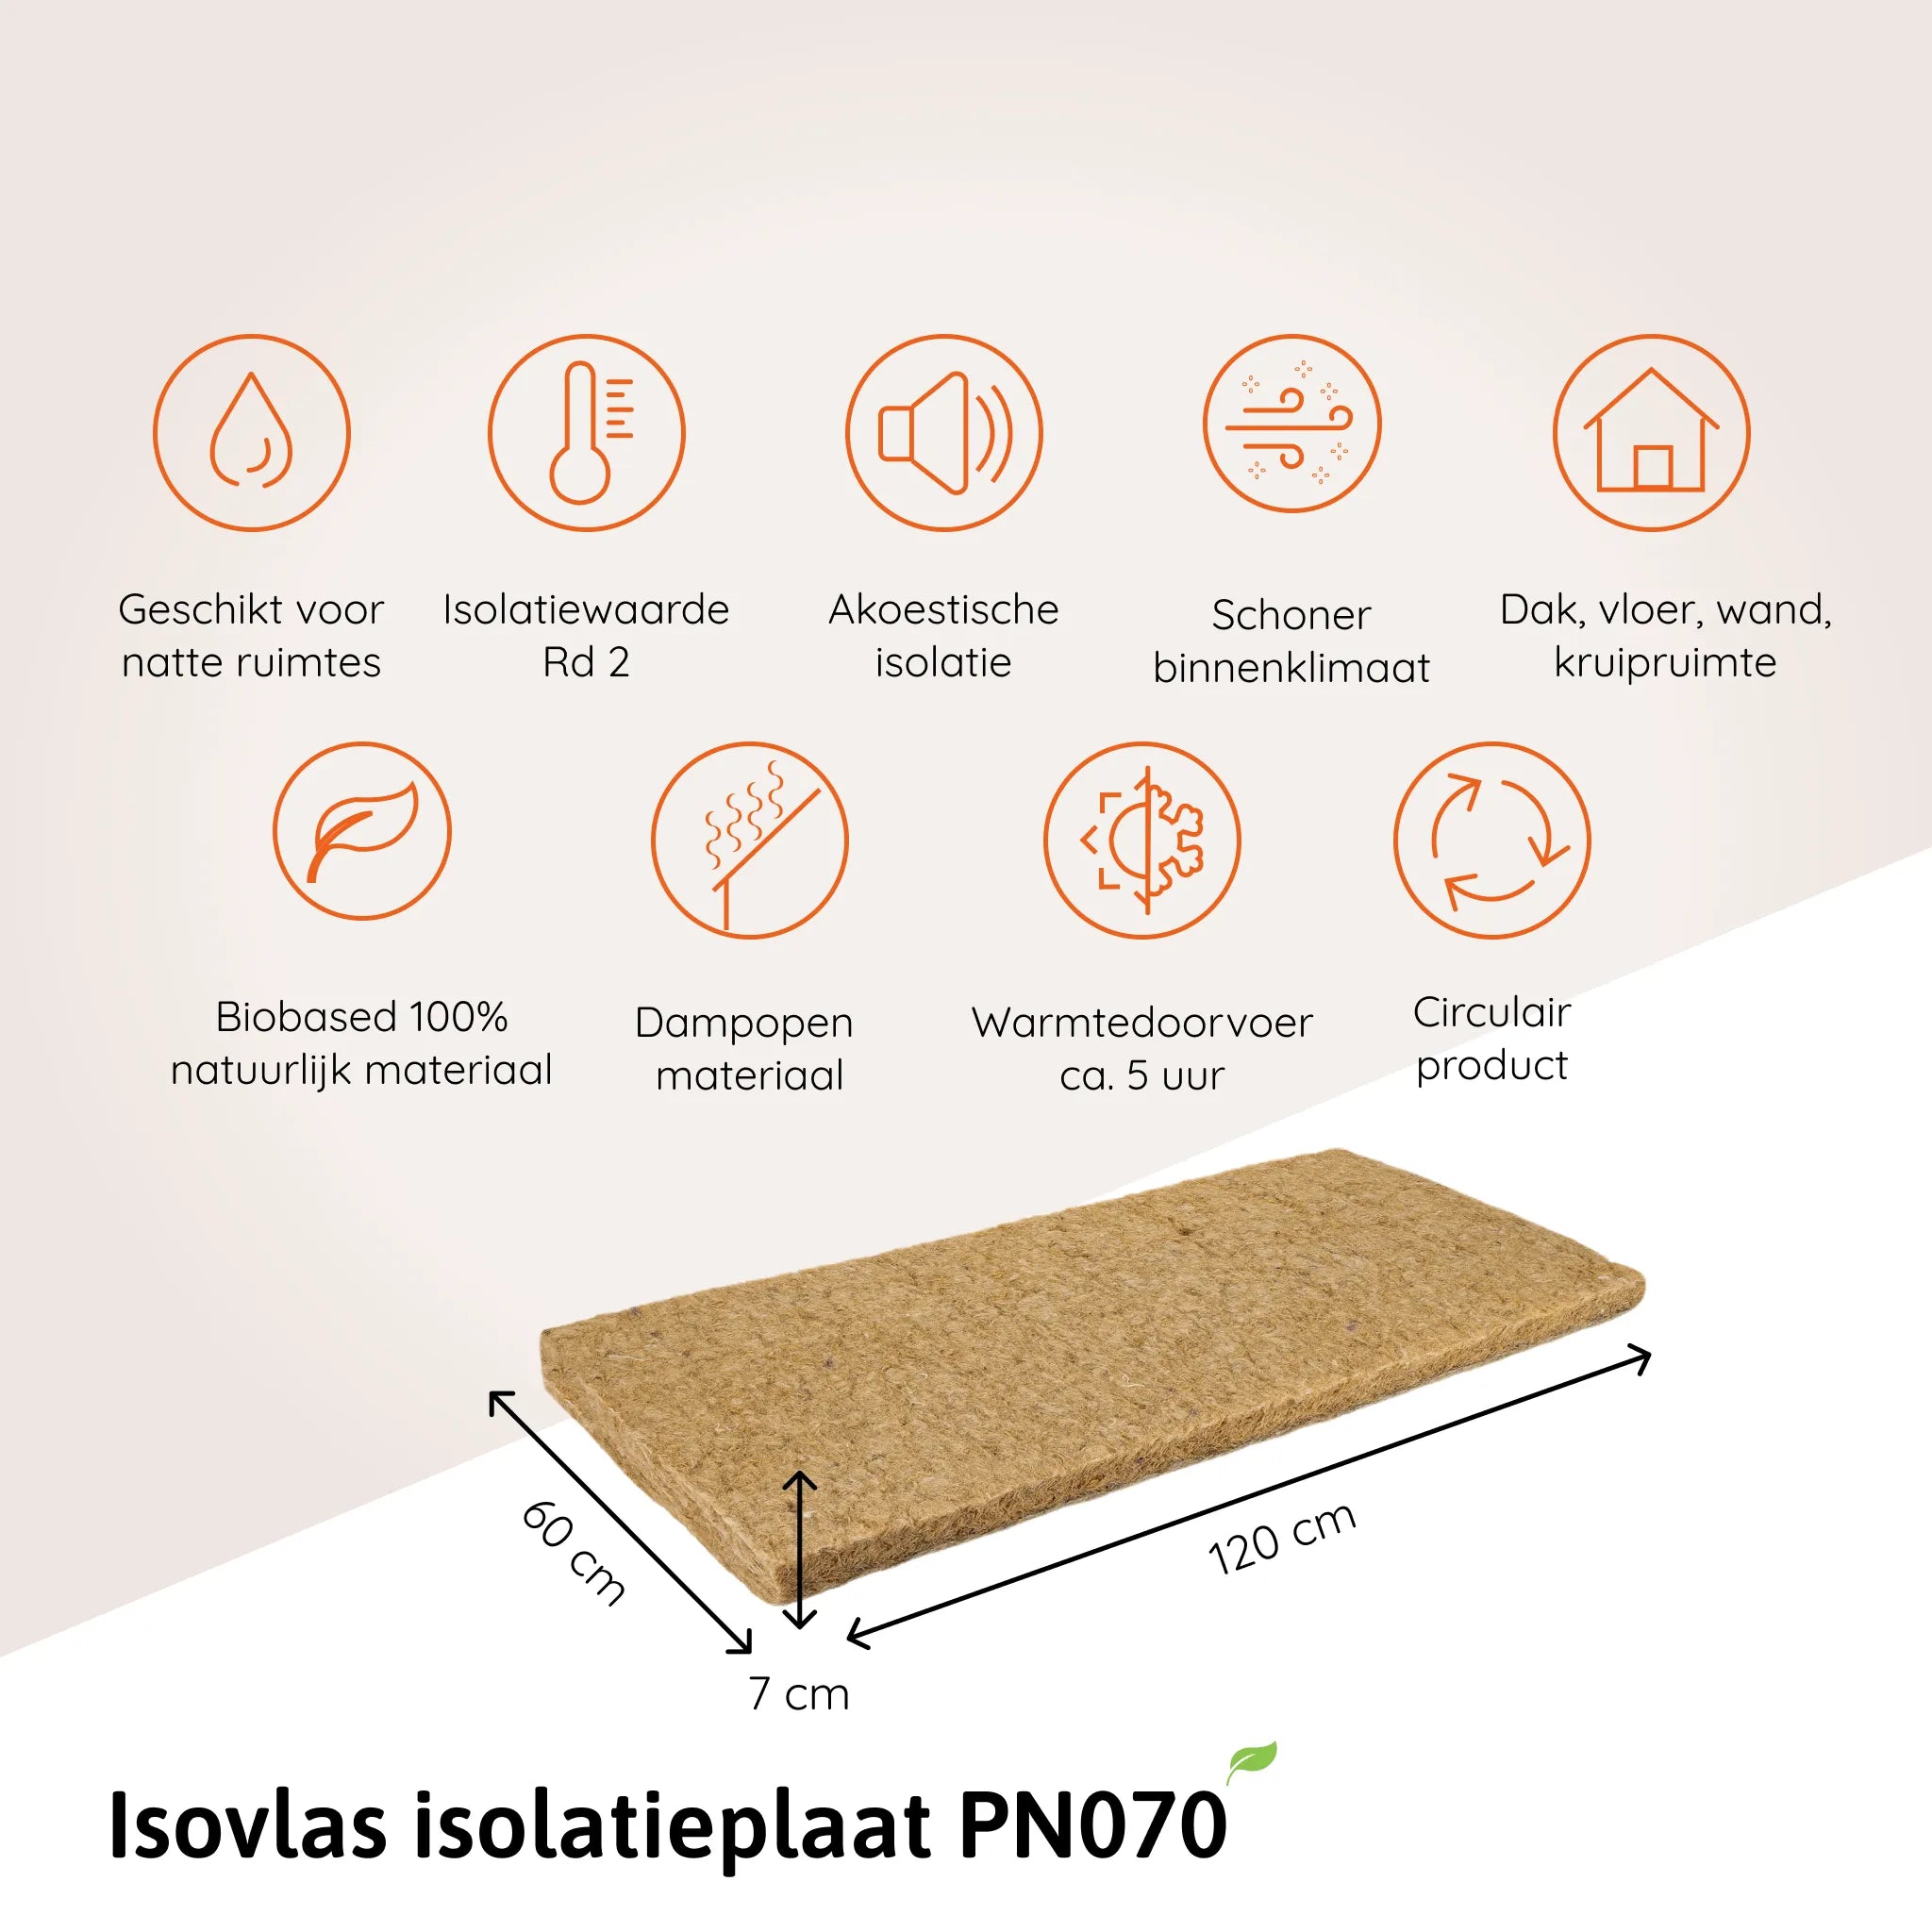 Isovlas isolatieplaat PN070